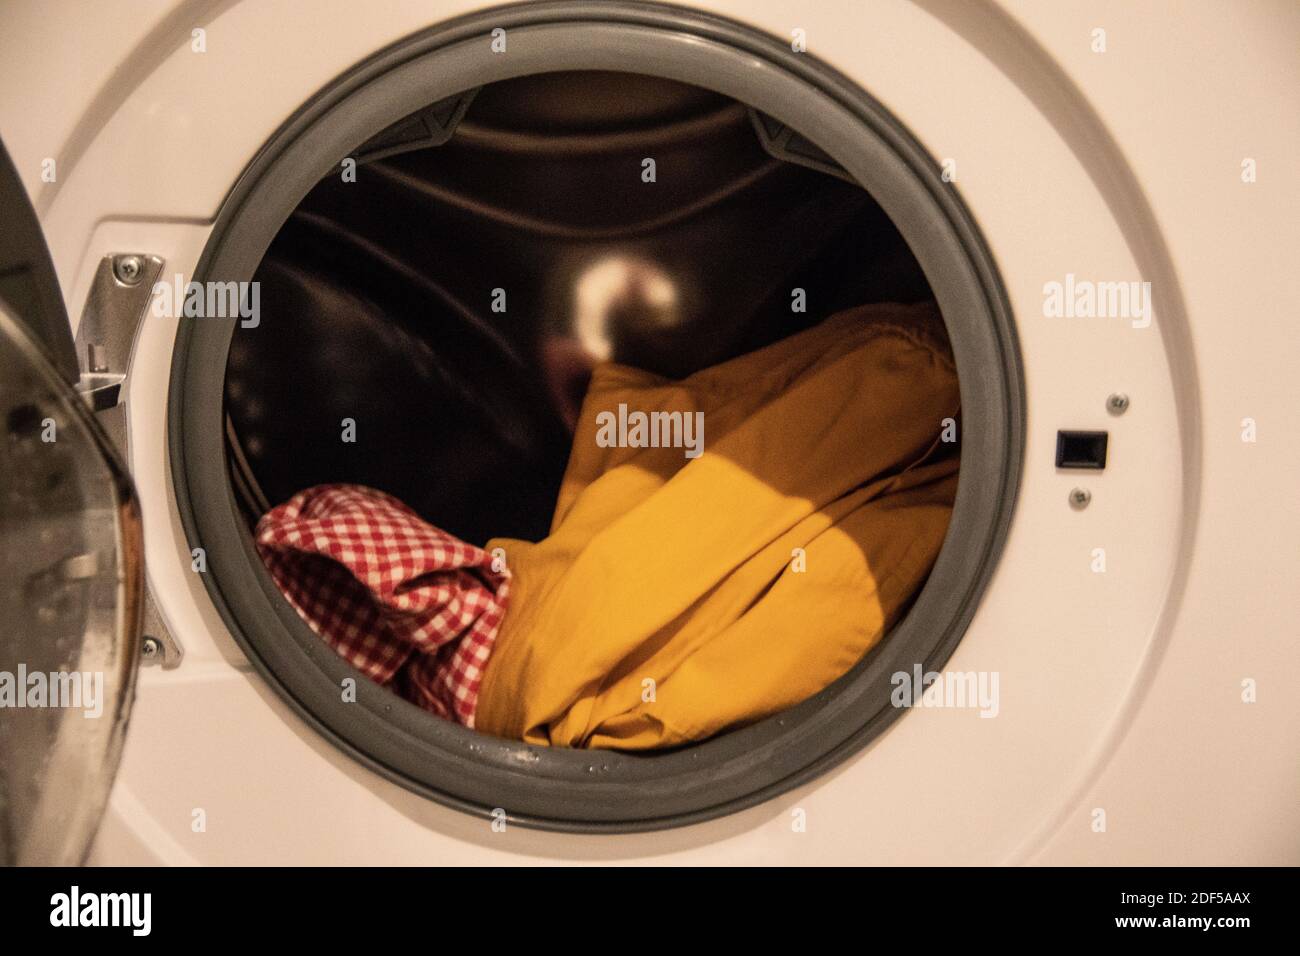 Die Waschmaschine wirbelt die Wäsche beim Waschen vor dem Bullauge Lösung Stockfoto